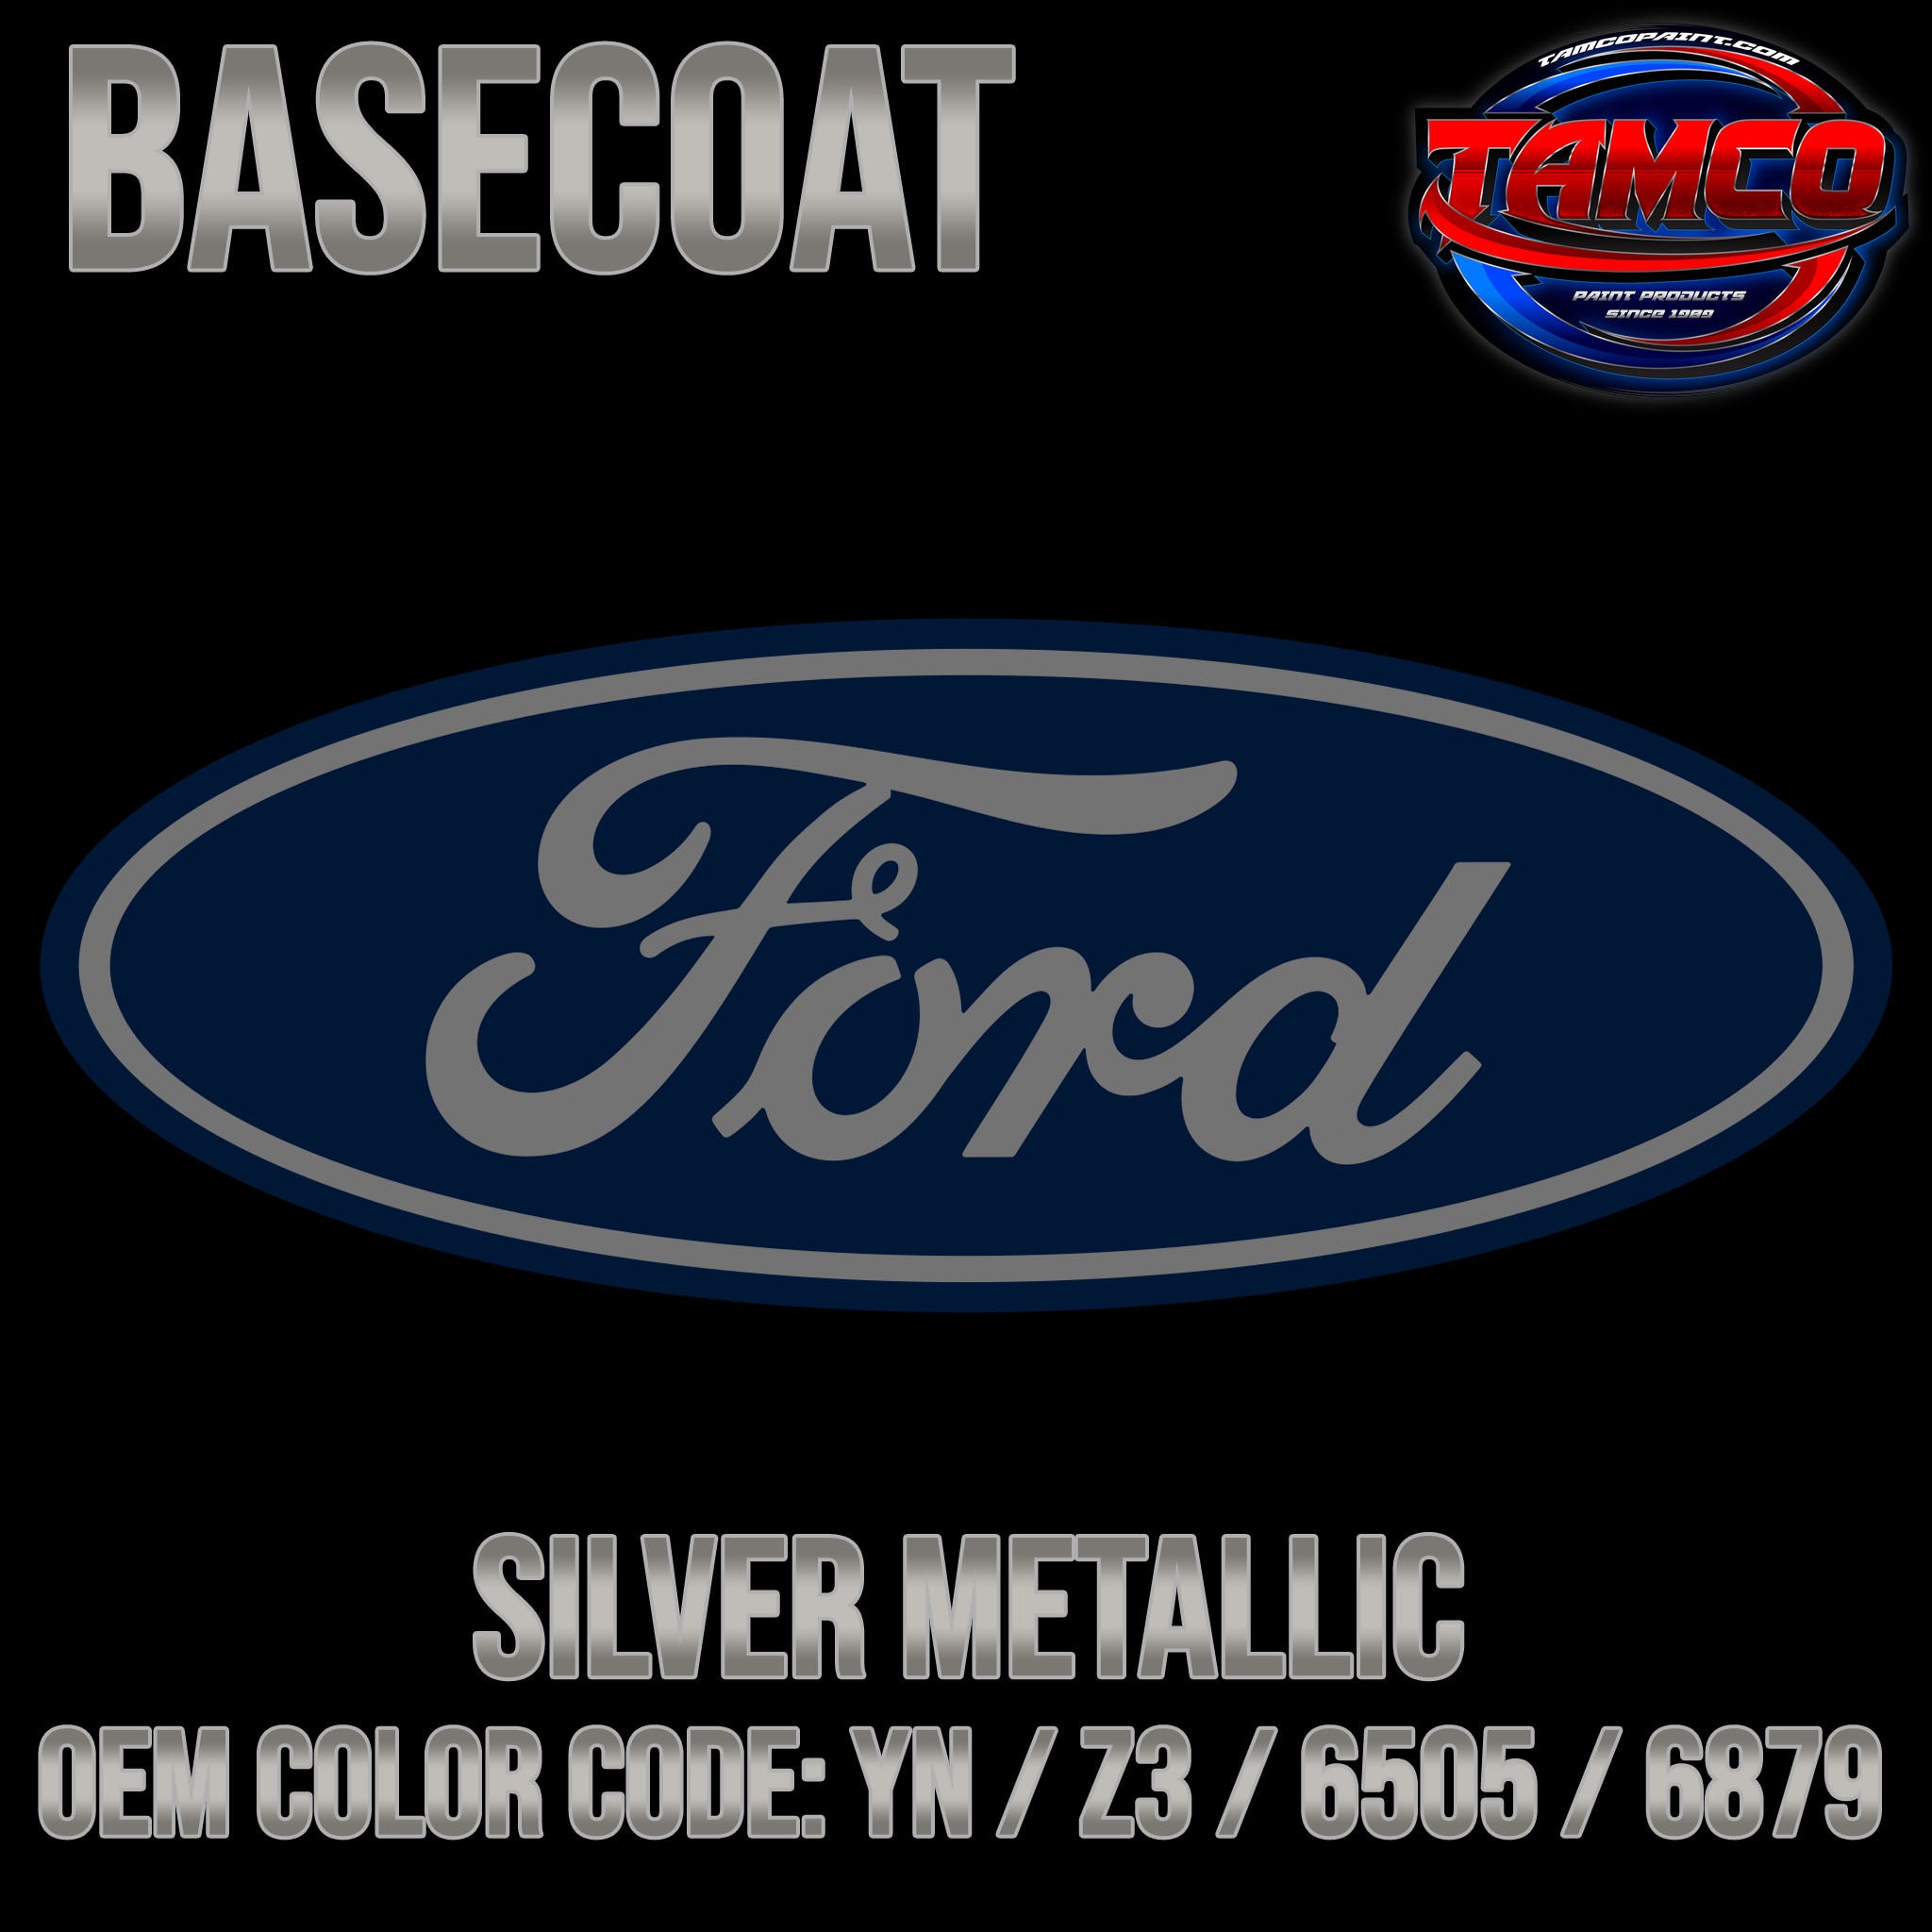 Ford Silver Metallic | YN / Z3 / 6505 / 6879 | 1991-2011 | OEM Basecoa